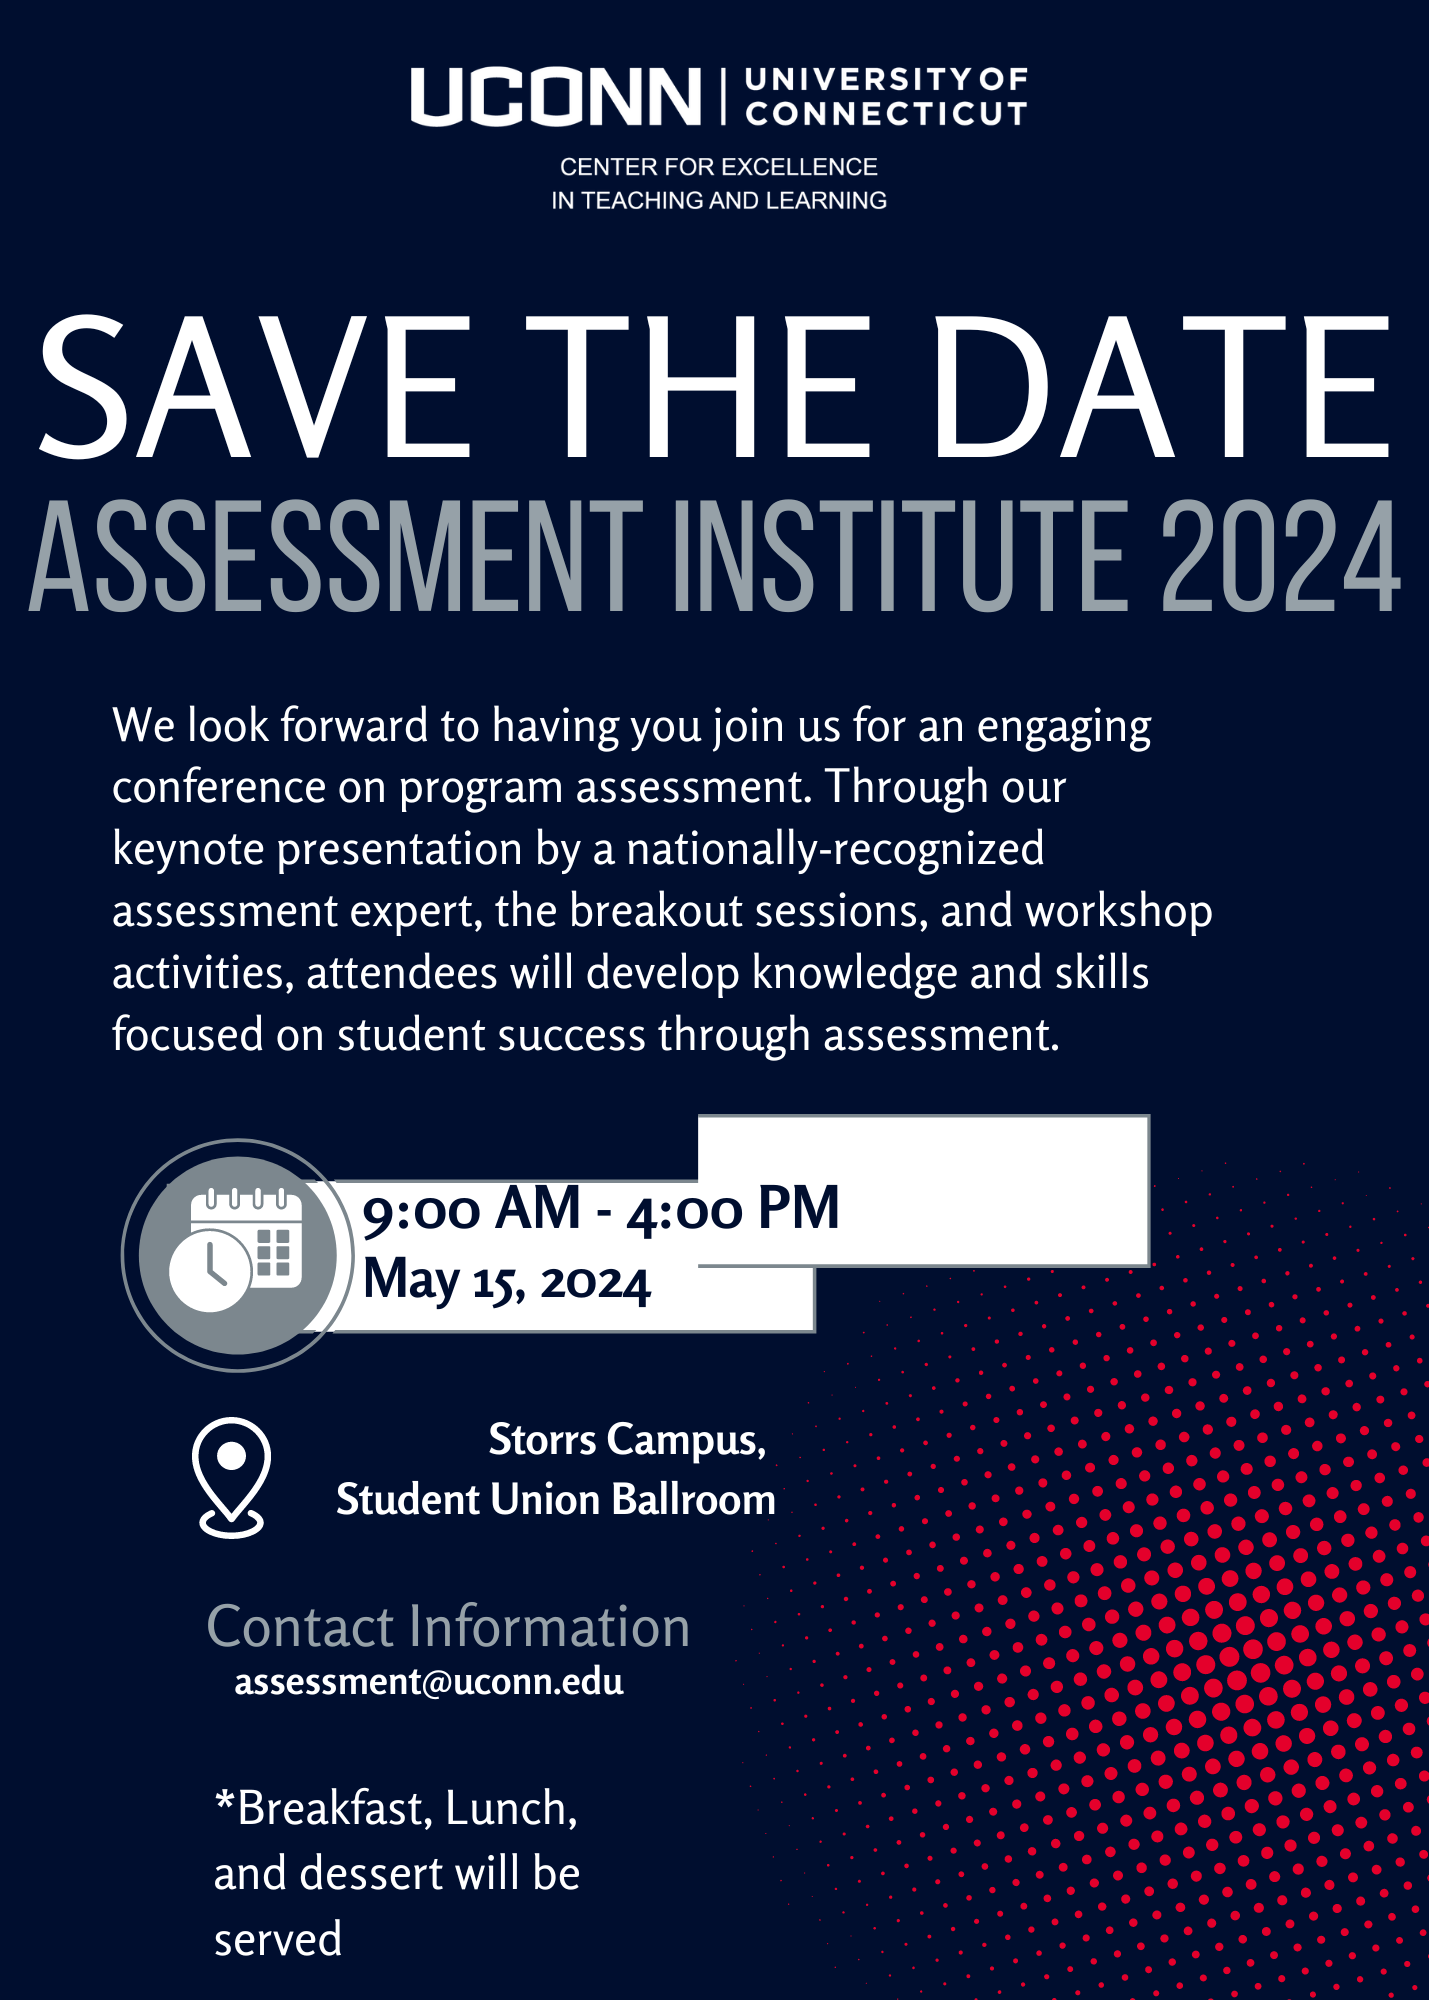 CETL's Assessment Institute 2024